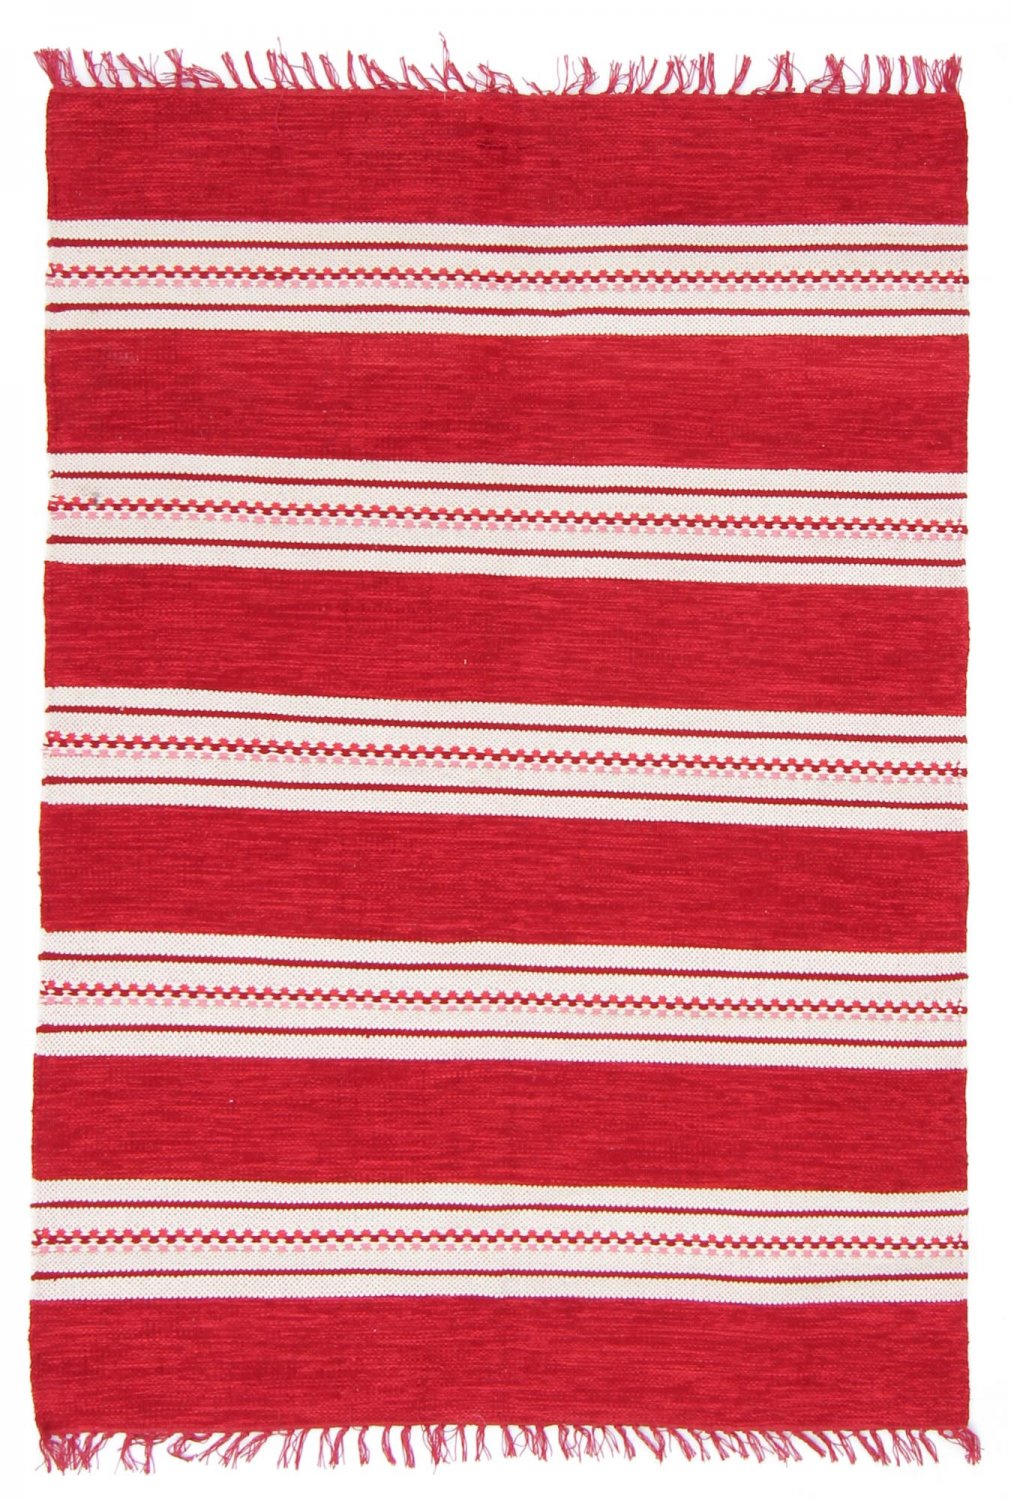 Rag rugs - Kajsa (red)